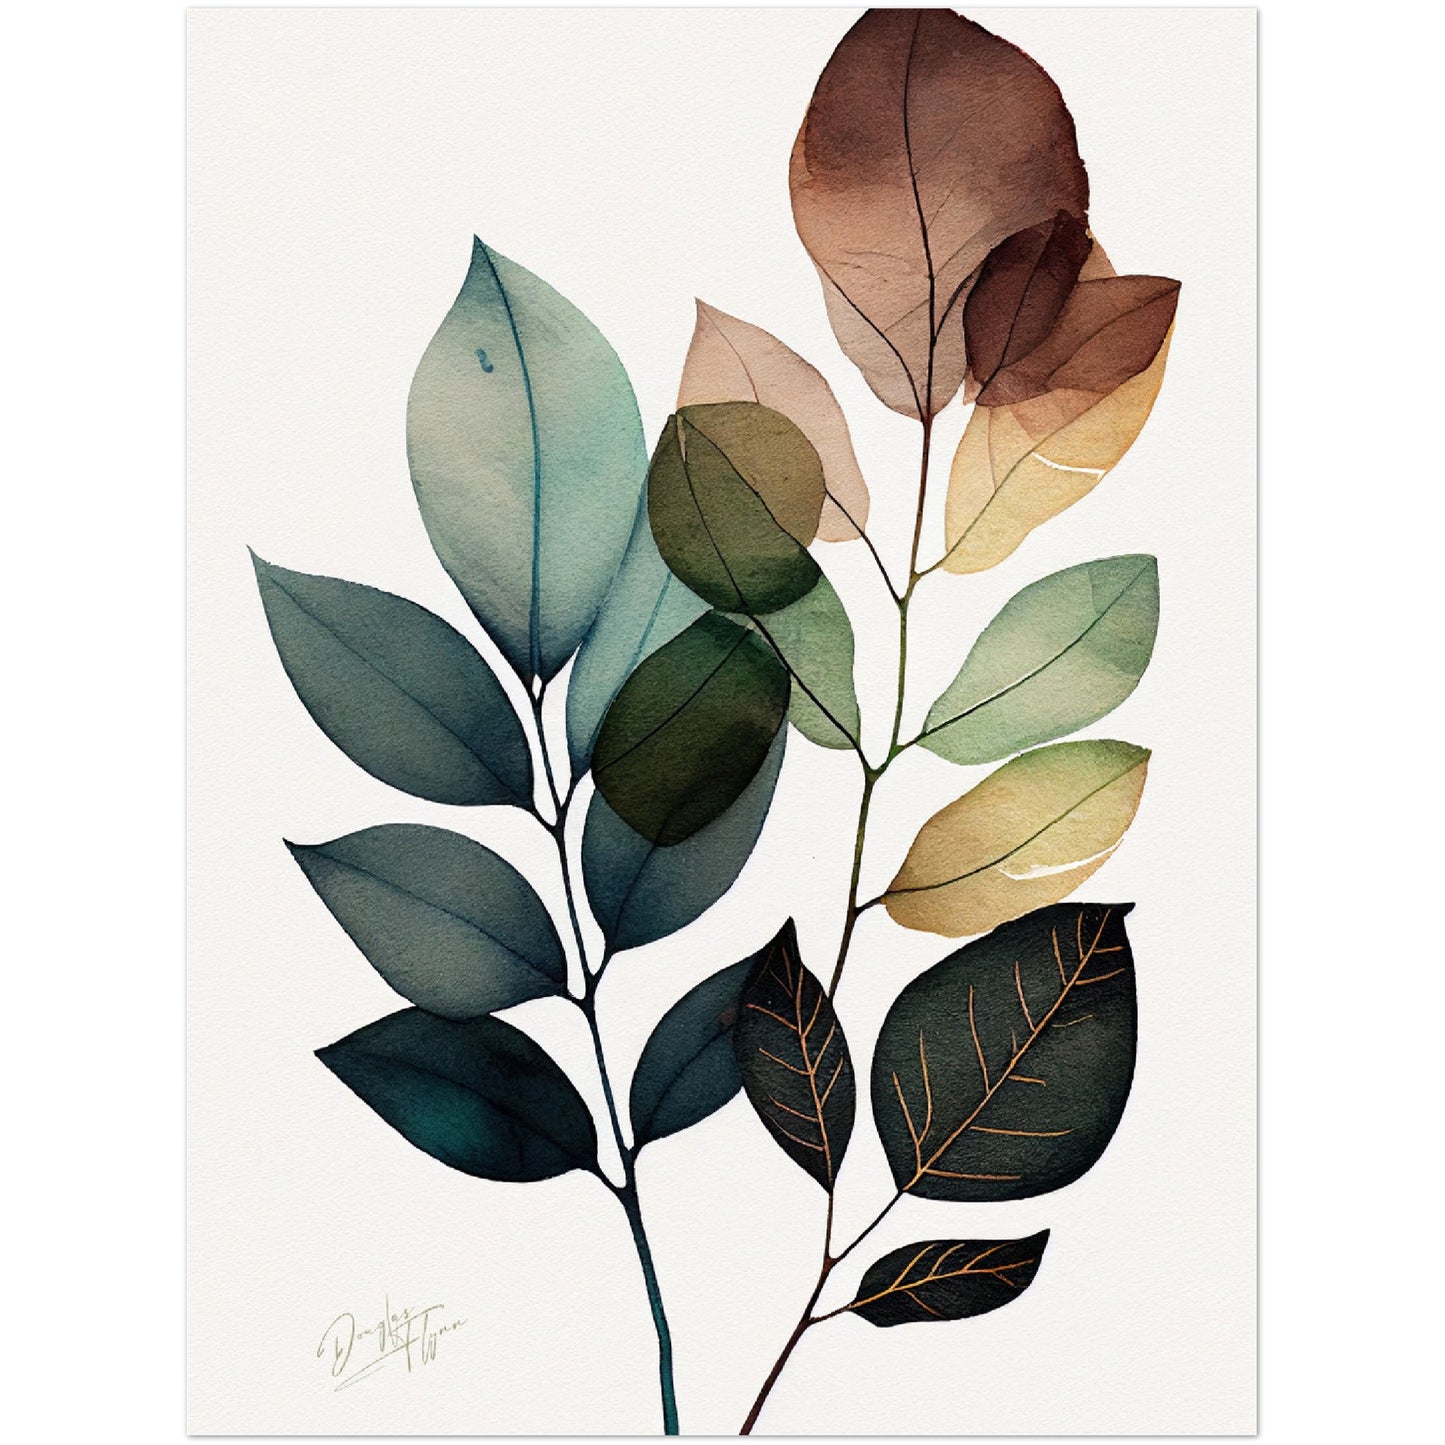 »Brushstrokes of Leaf Bliss« retro poster